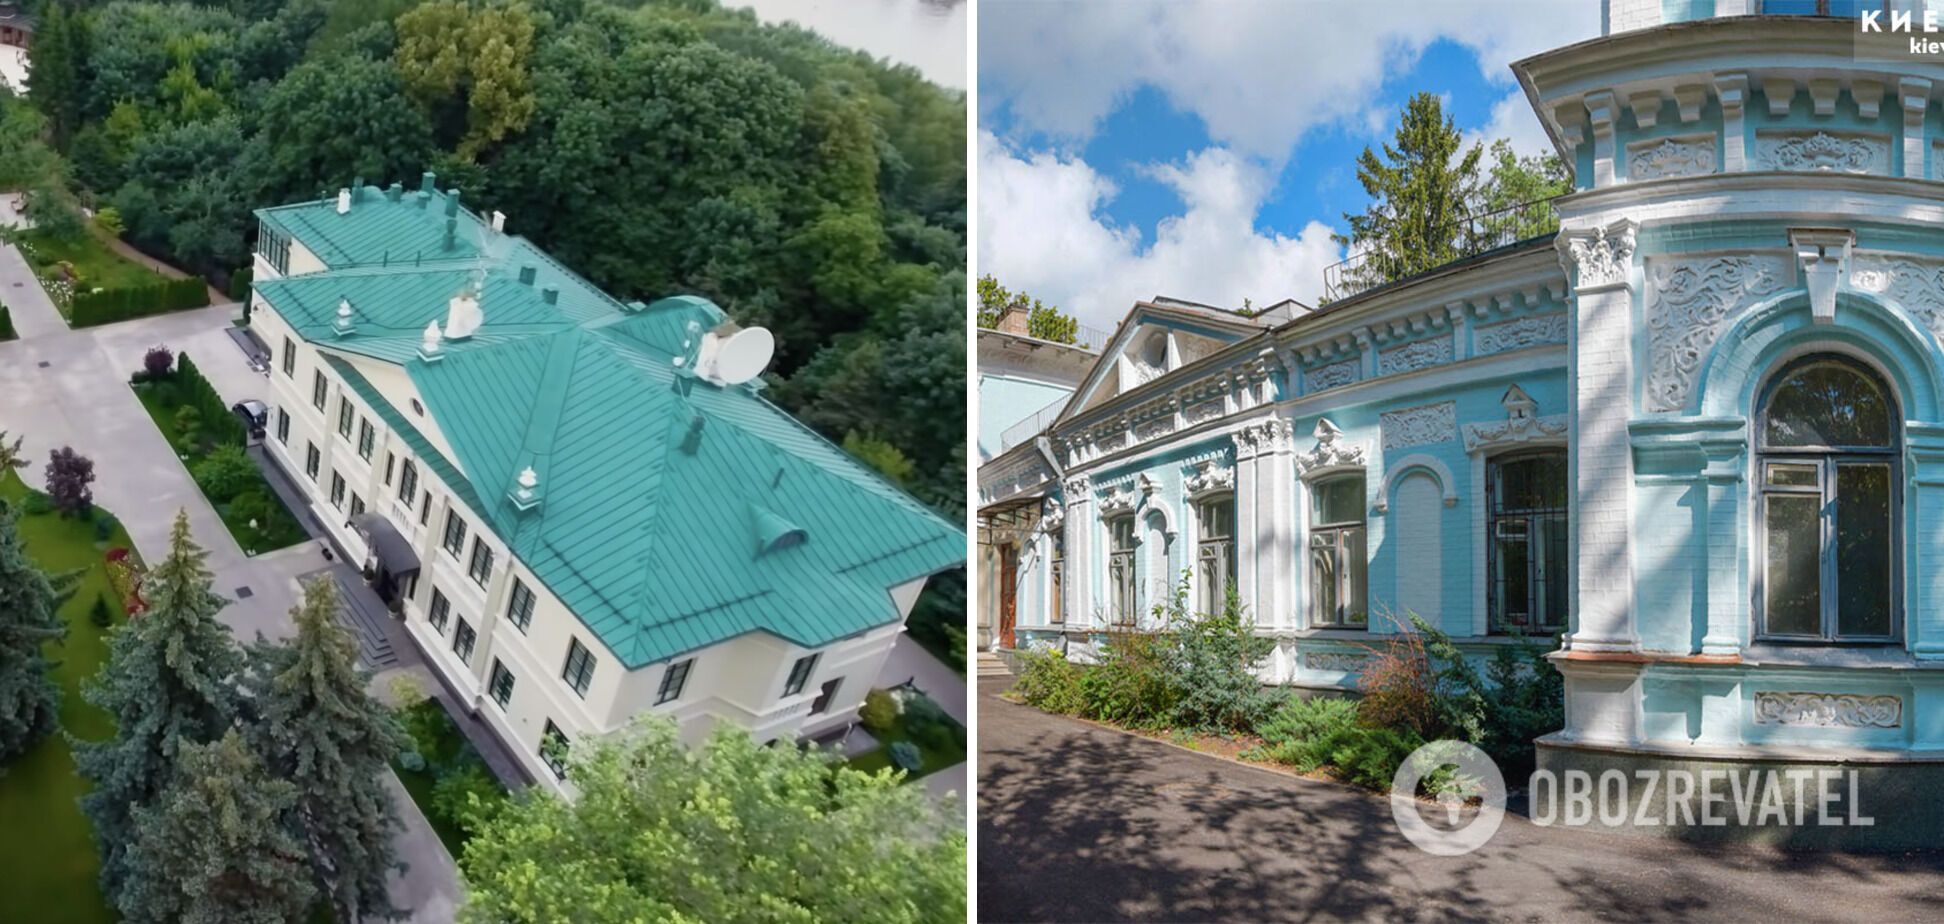 Слева резиденция Хрущева в Москве, справа дача в Киеве.